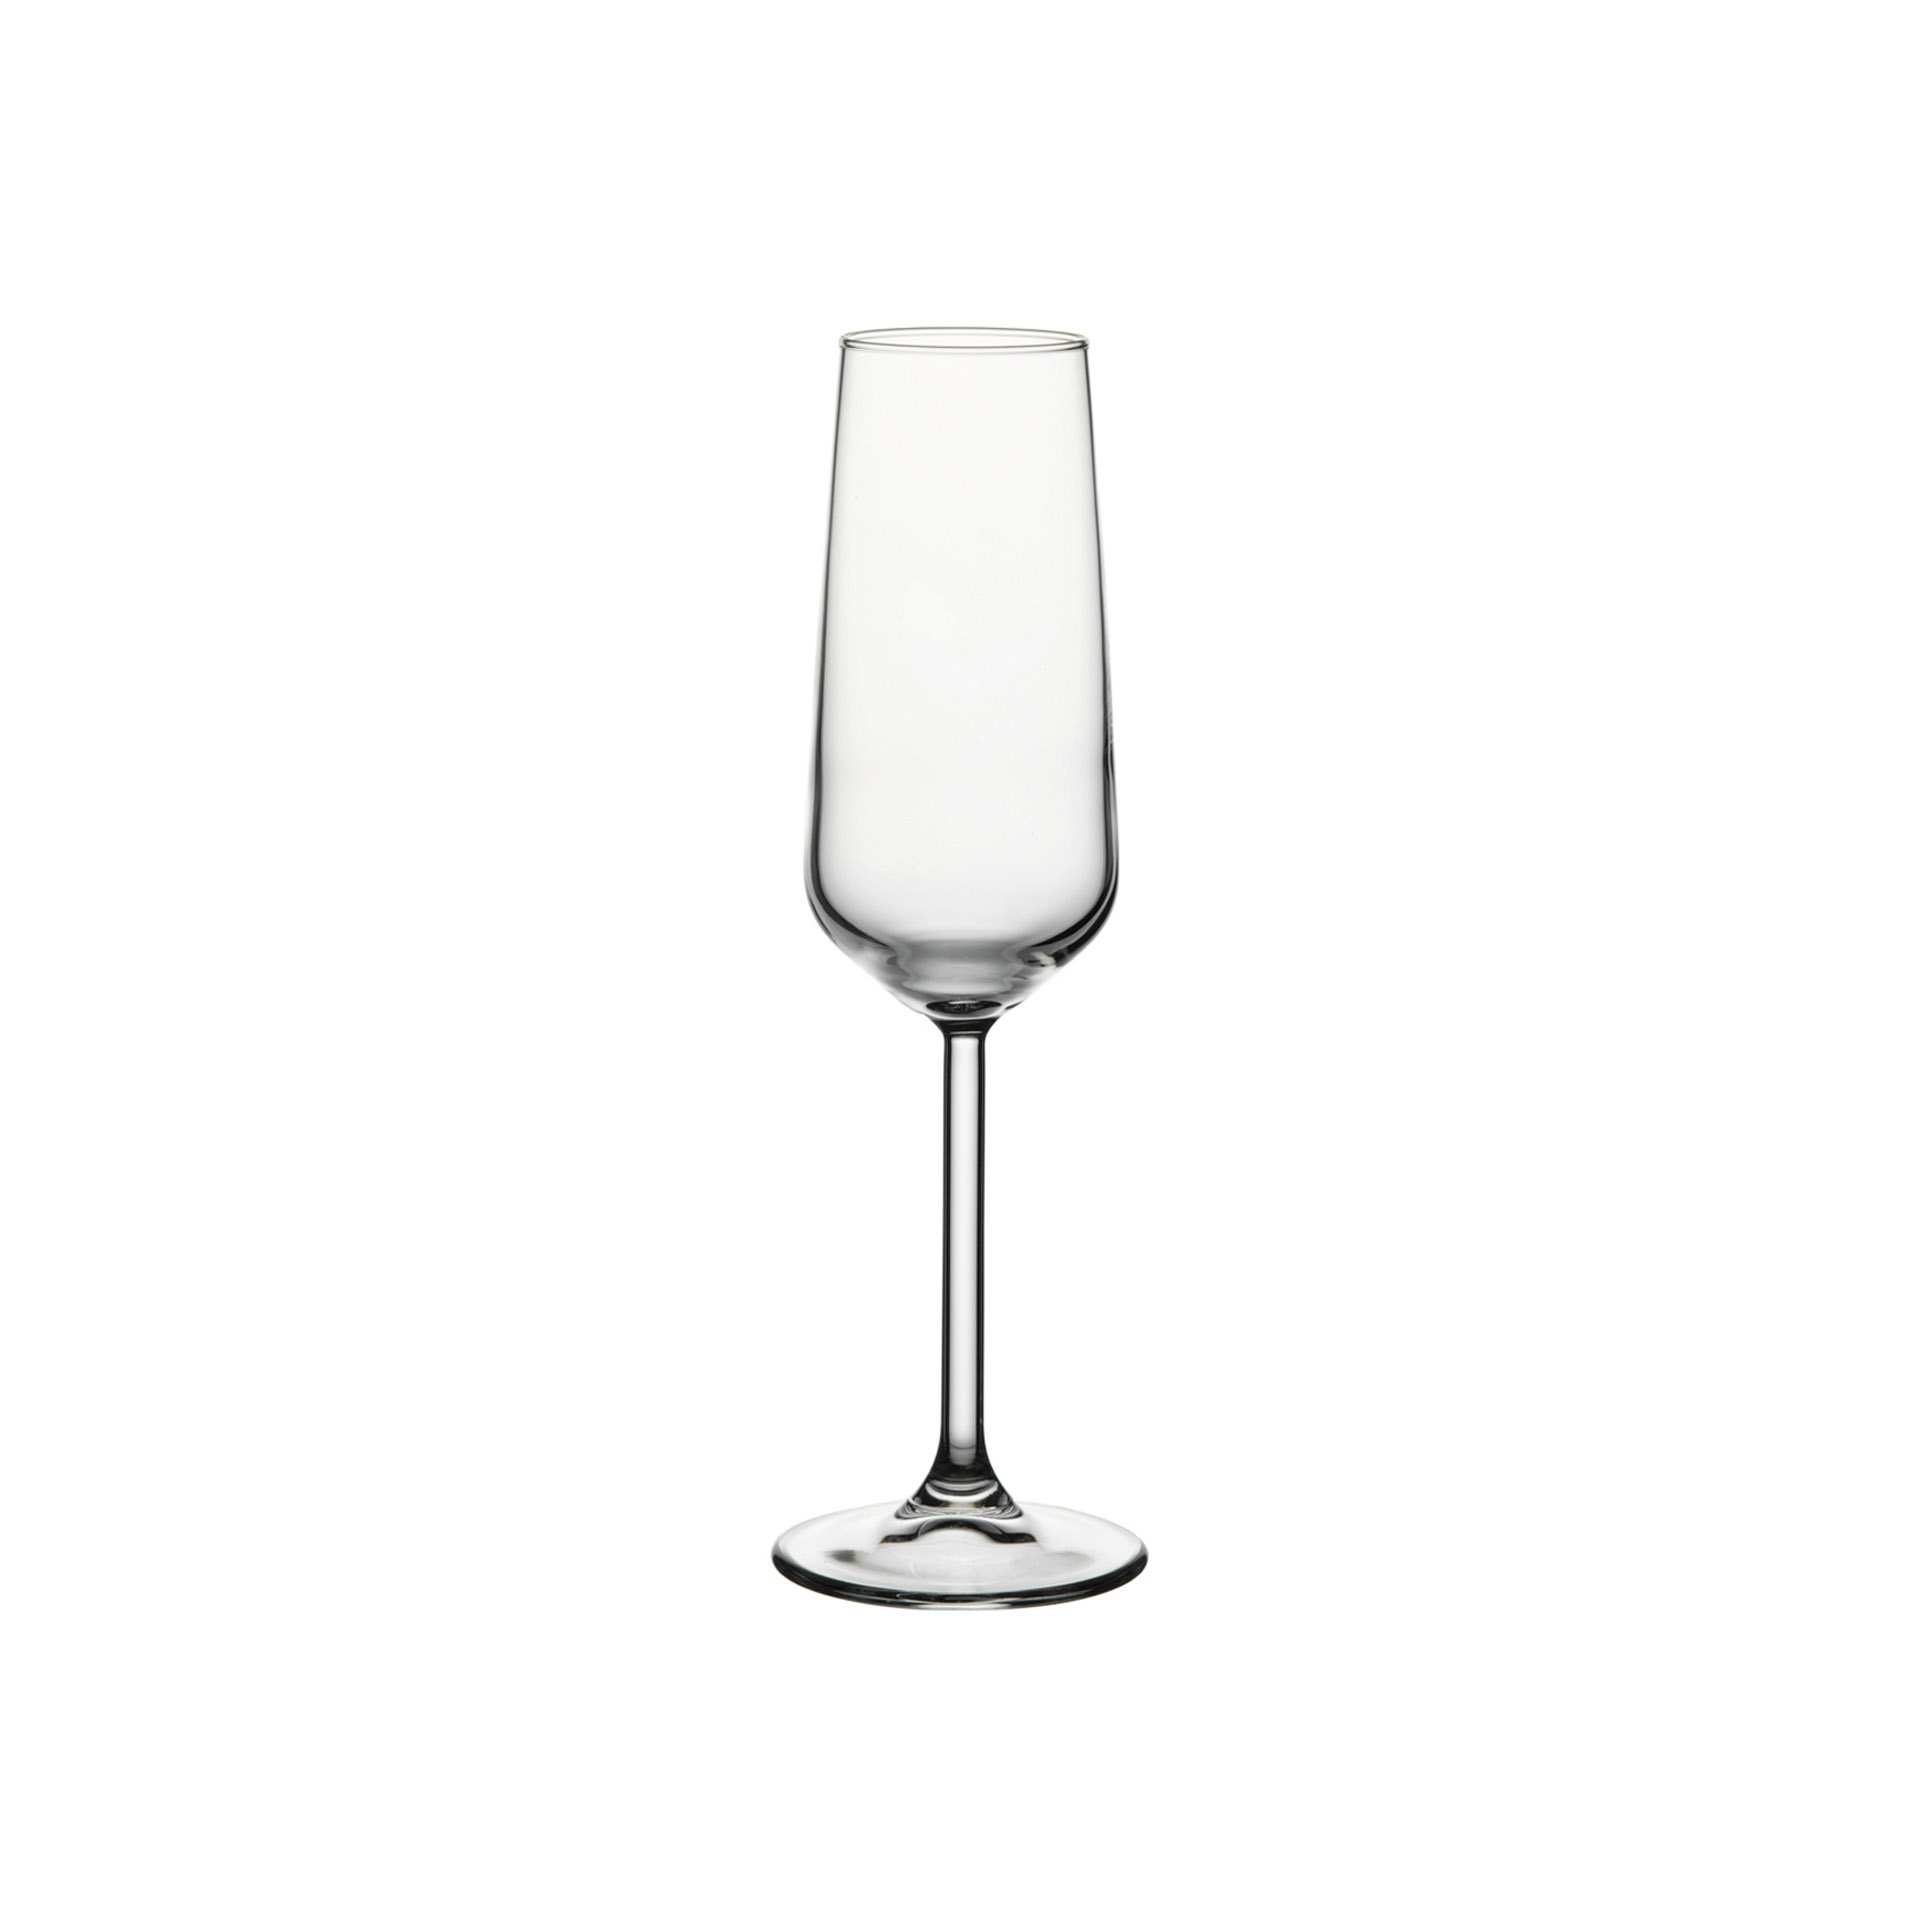 Champagner-Glas - Set á 6 Stück - Serie Allegra - Höhe 22,6 cm - Ø oben / unten 5,8 / 7,0 cm - Inhalt 0,195 l - Glas - 440079-A